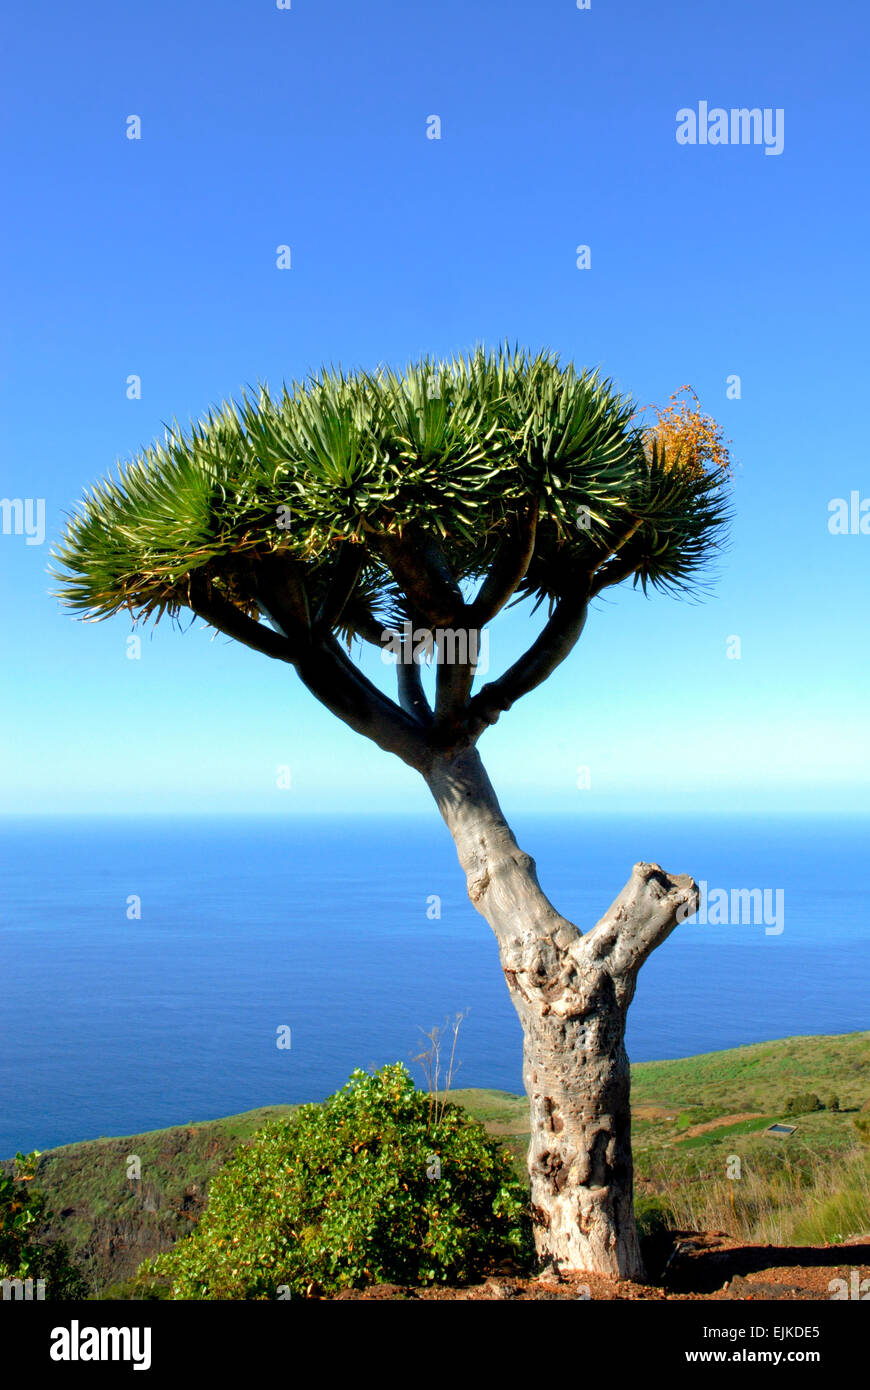 Dragon tree (Dracaena), La Palma, Canary Islands, Spain, Europe Stock Photo